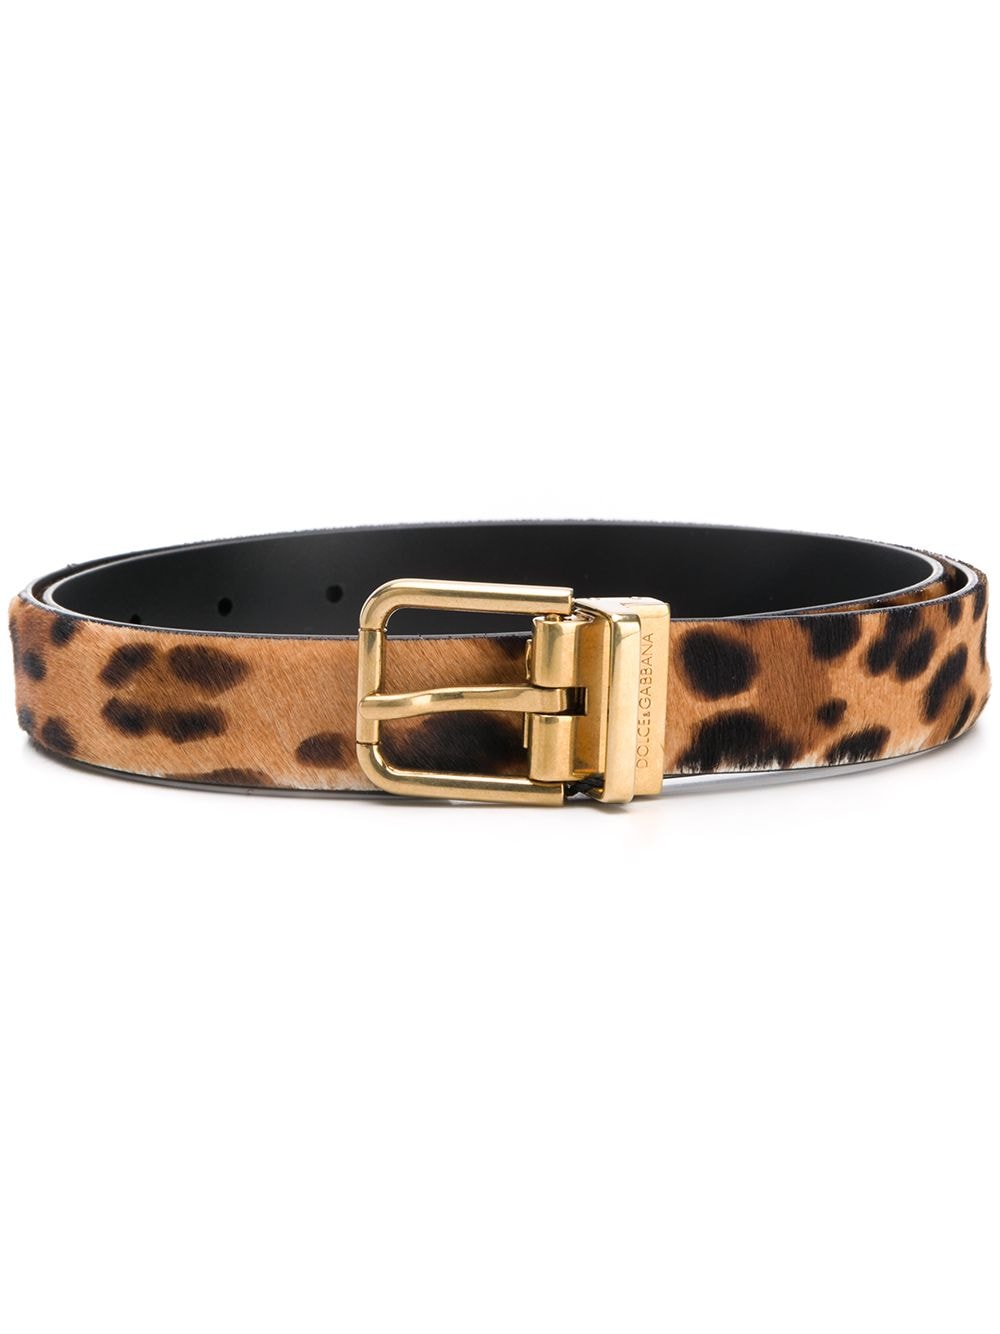 Dolce & Gabbana leopard-print leather belt - Neutrals von Dolce & Gabbana